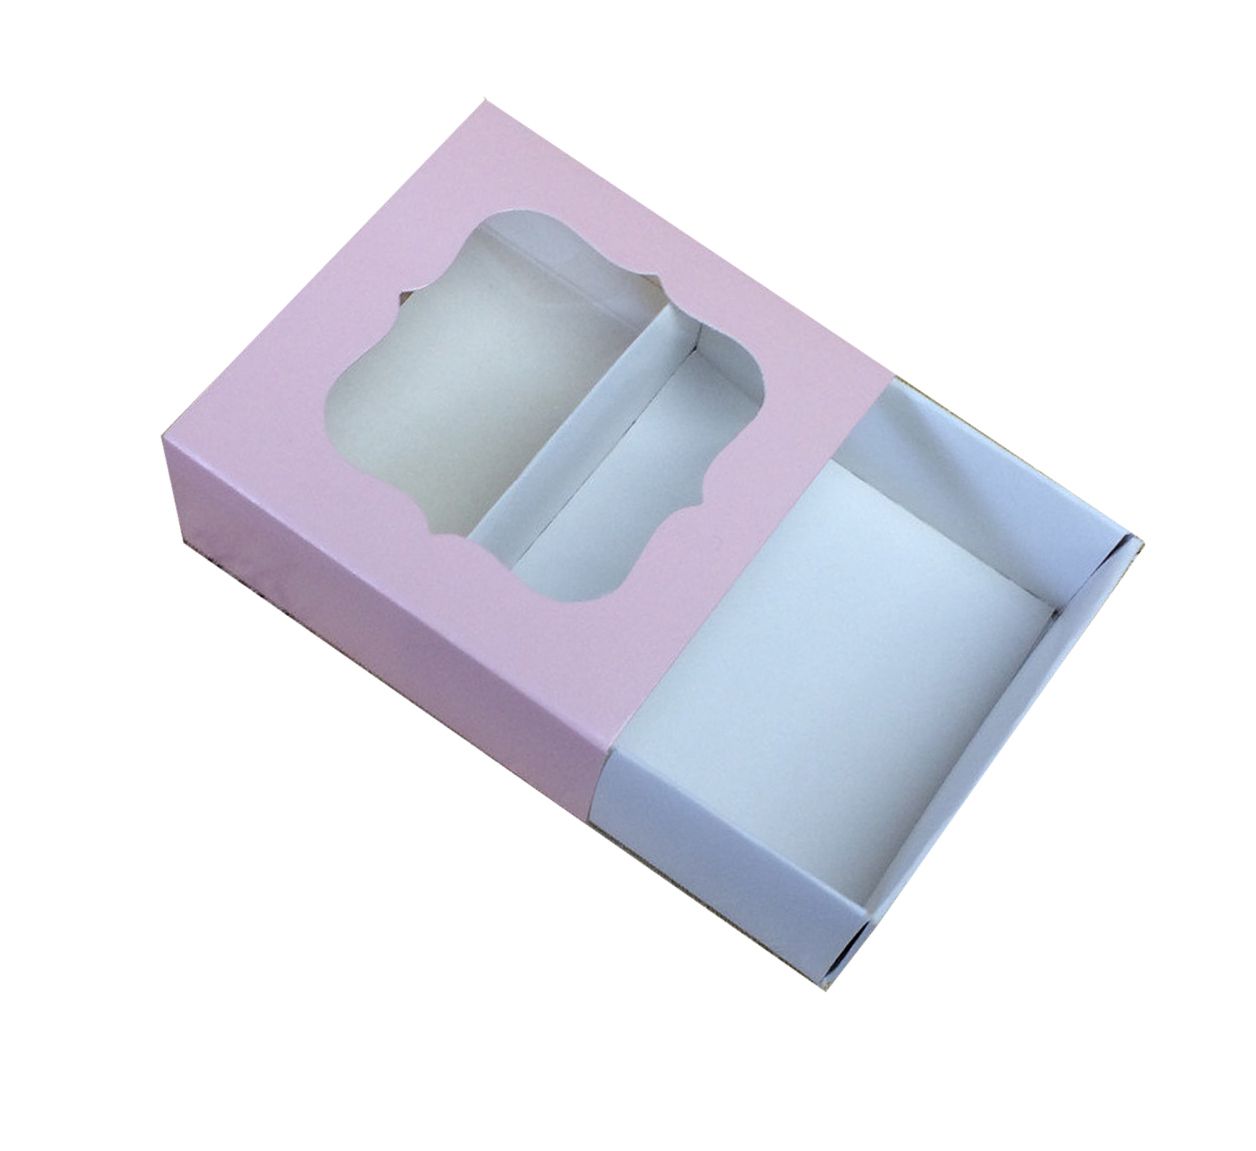 ⋗ Коробка для цукерок, виробів Hand Made, мила ручної роботи Рожева, 8х8х3,5 см купити в Україні ➛ CakeShop.com.ua, фото